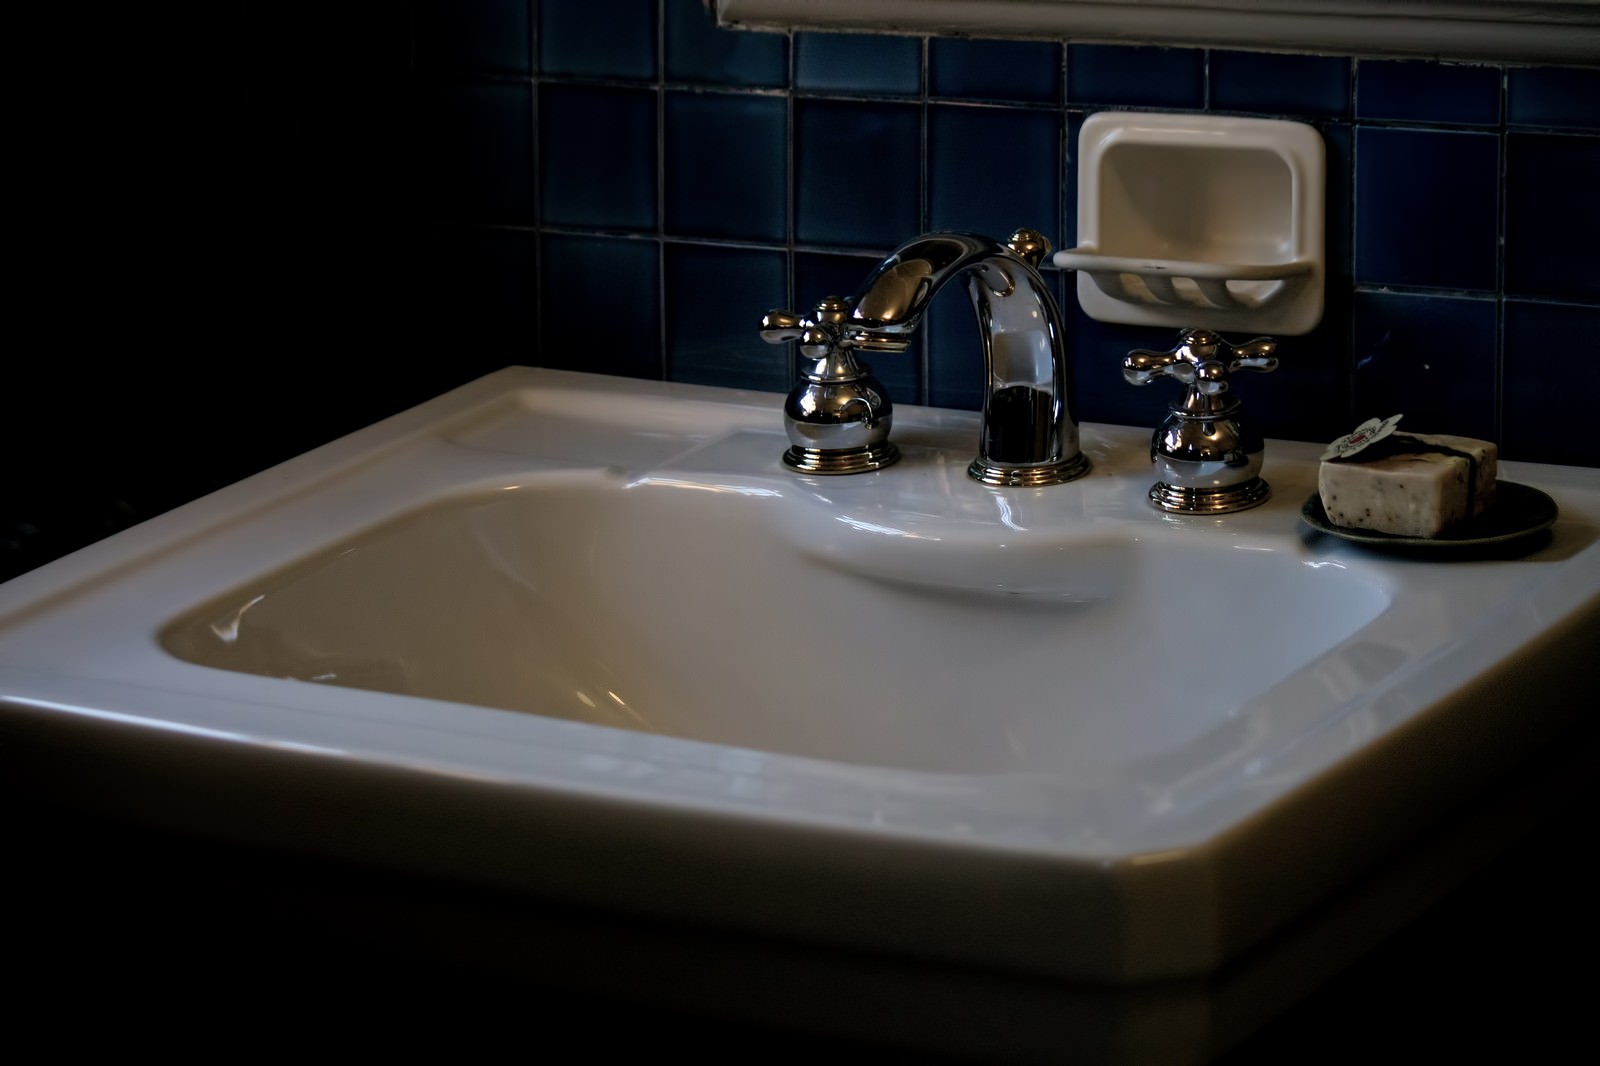 「薄暗い手洗い場薄暗い手洗い場」のフリー写真素材を拡大